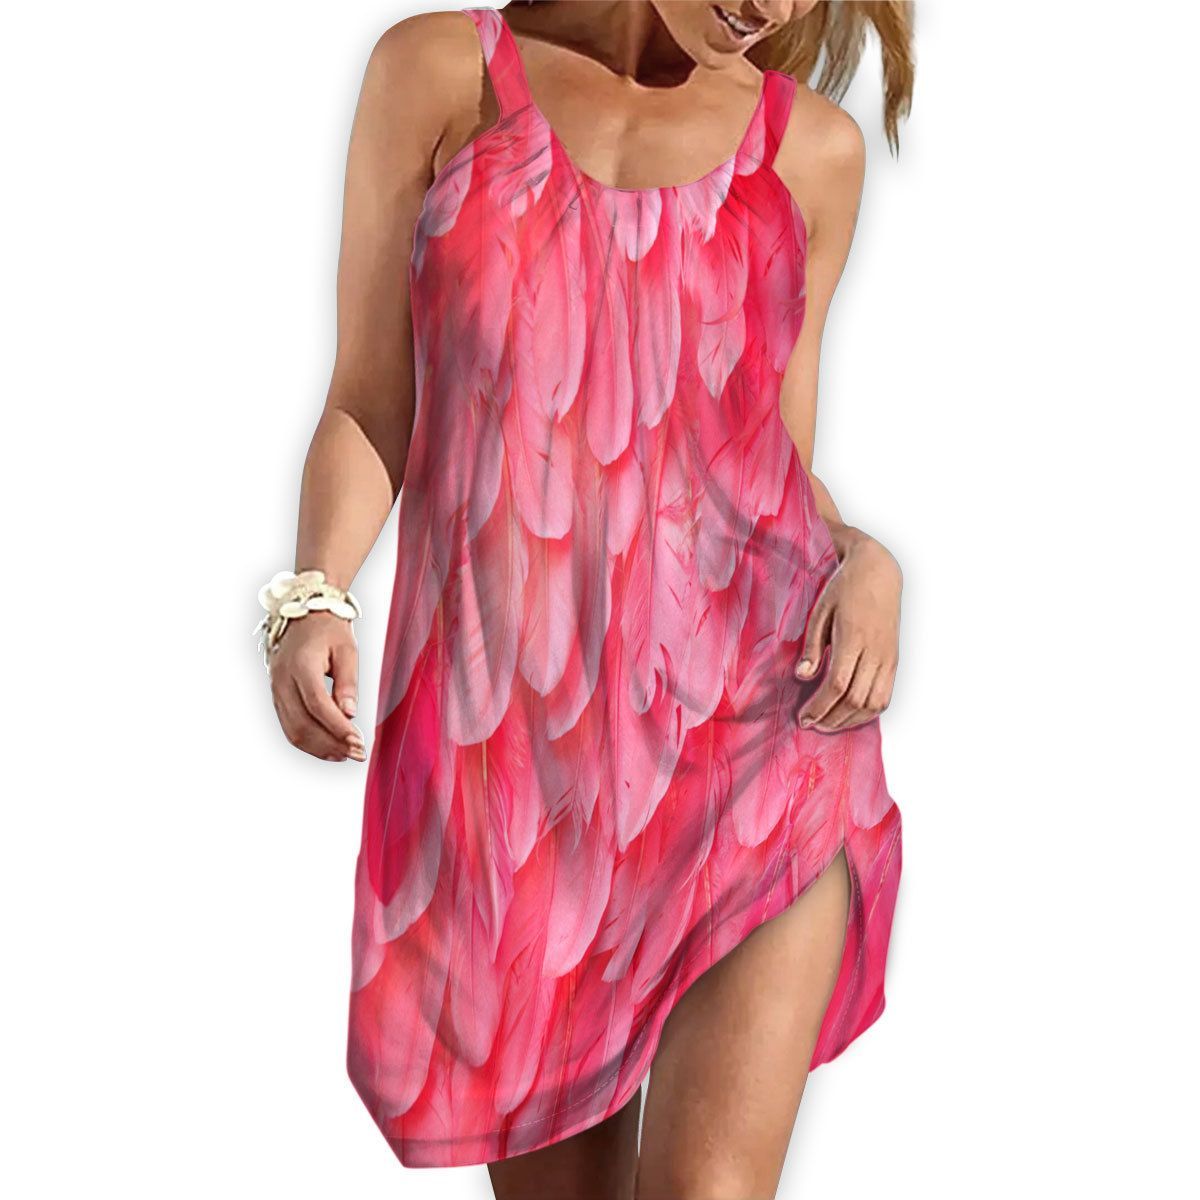 Gearhuman 3D The Most Flamingo Sleeveless Beach Dress ZK1606214 Beach Dress 